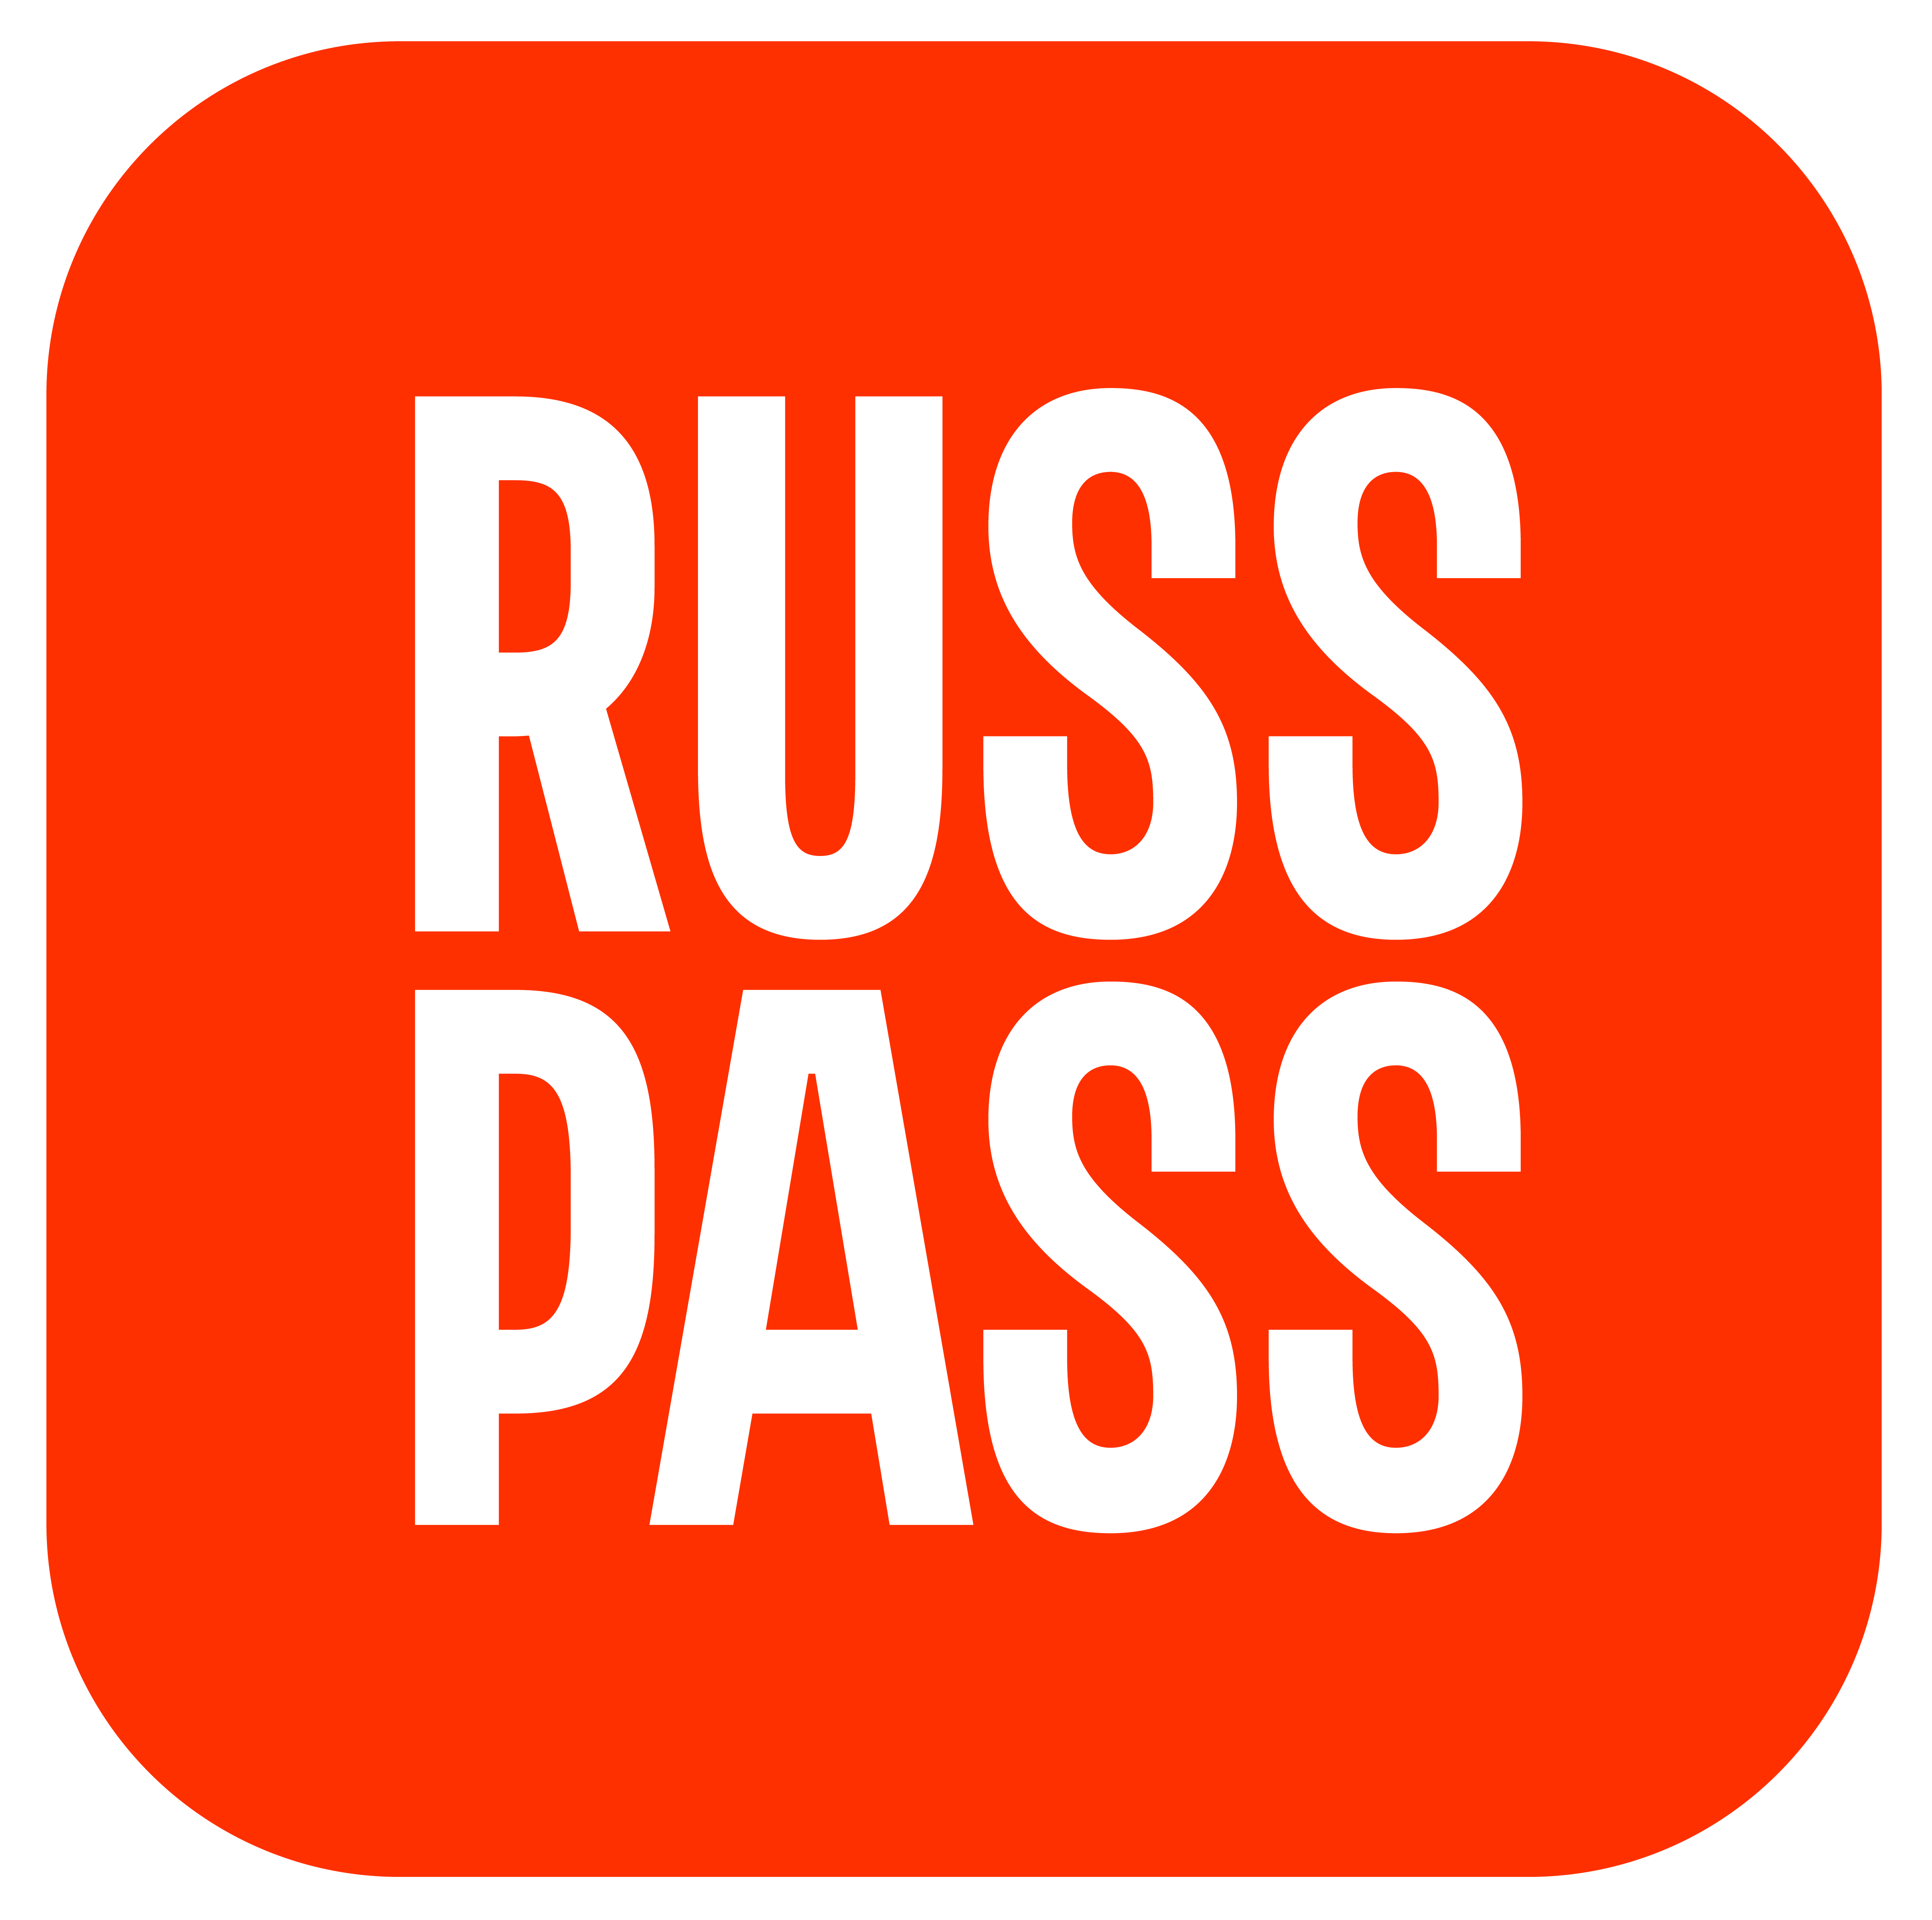 Russ pass